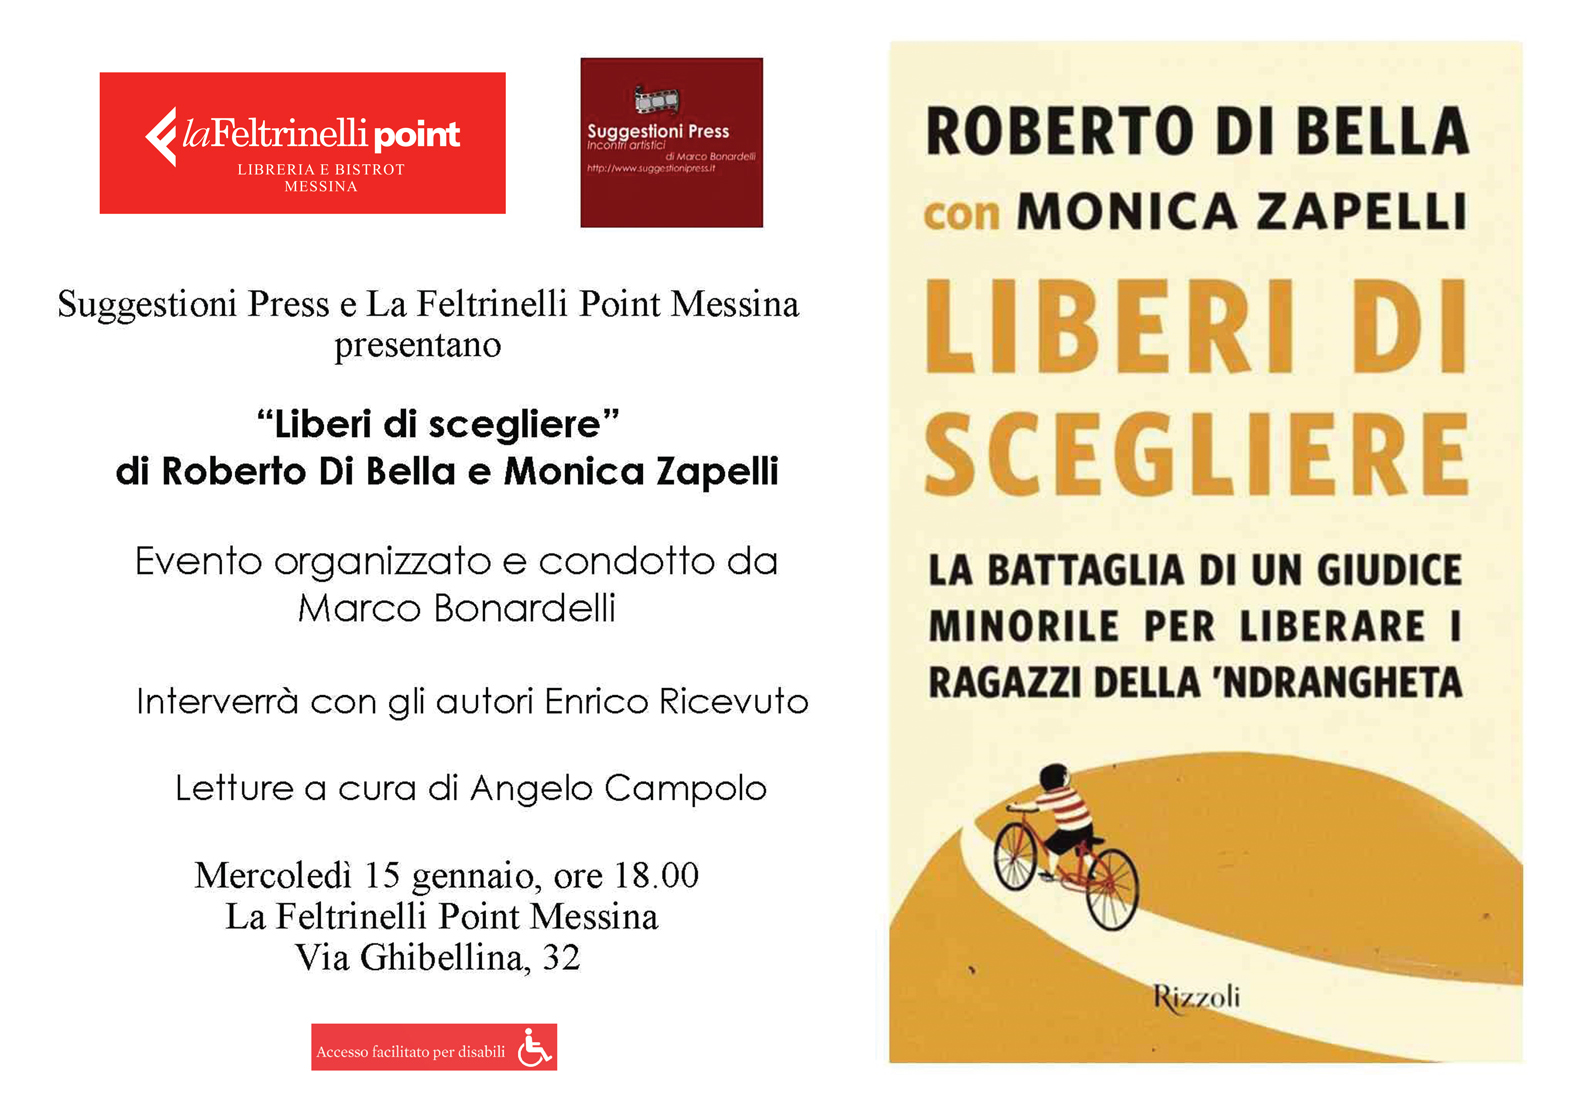 Locandina dell'evento "Liberi di scegliere", promosso da Suggestioni Press e La Feltrinelli Point Messina per il 15 gennaio 